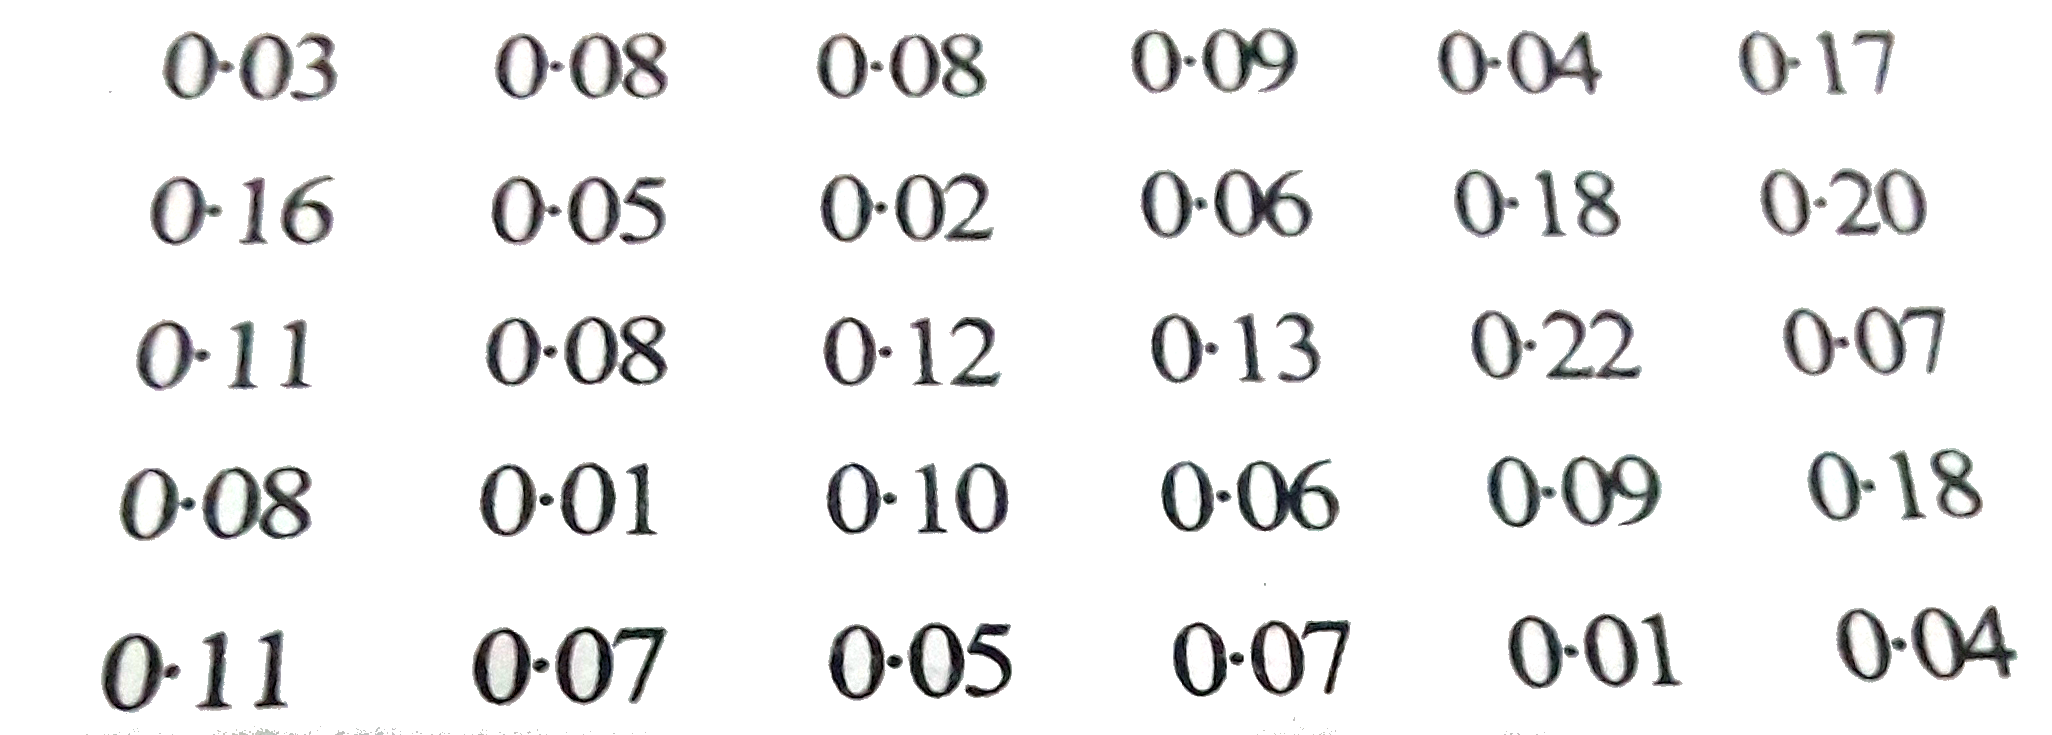 एक नागर में वायु में सल्फर डाई-ऑक्सीसडे का सांद्रण भाग प्रति मिलियन [parts per mililion (ppm)] में ज्ञात करने के लिए एक अध्यन किया गया 30 दिनों के प्राप्त किये गये आकड़ो ये है:       (i) 0.00-0.04, 0.04-0.08 आदि का वर्ग अंतराल लेकर इन आकड़ो की एक वर्गीकृत बारंबारता बटन सारणी बनाइये   (ii) सल्फर डाई-ऑक्ससीडे की सांद्रता कितने दिन 0.11 भाग प्रति मिलियन से अधिक रही